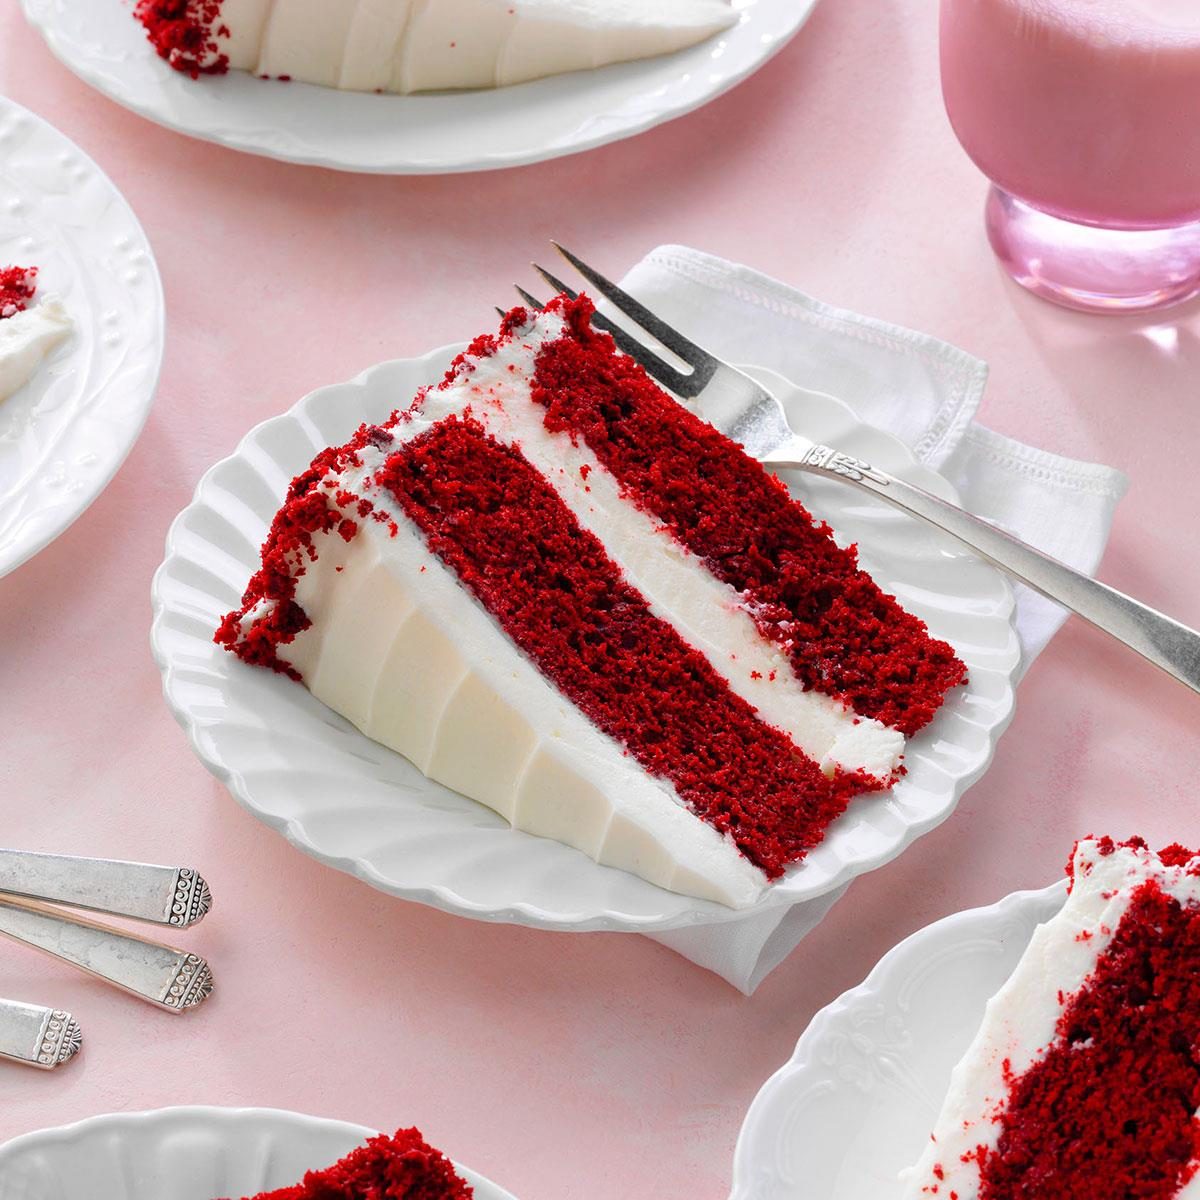 https://www.tasteofhome.com/wp-content/uploads/2018/01/Grandma-s-Red-Velvet-Cake_EXPS_TOHcomFB24_42588_P2_MD_09_12_5b.jpg